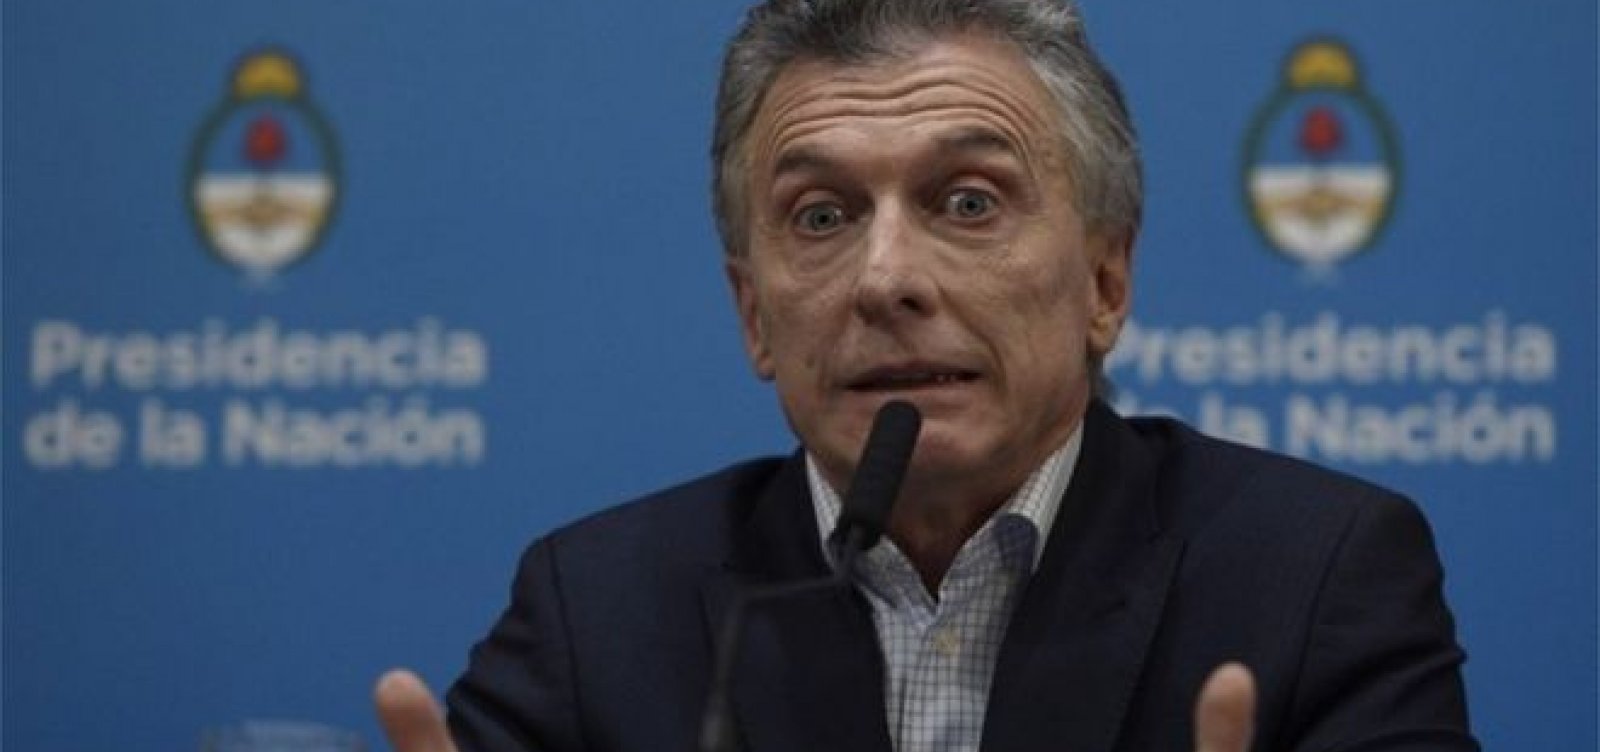  Macri anuncia medidas econômicas após derrota em prévias eleitorais